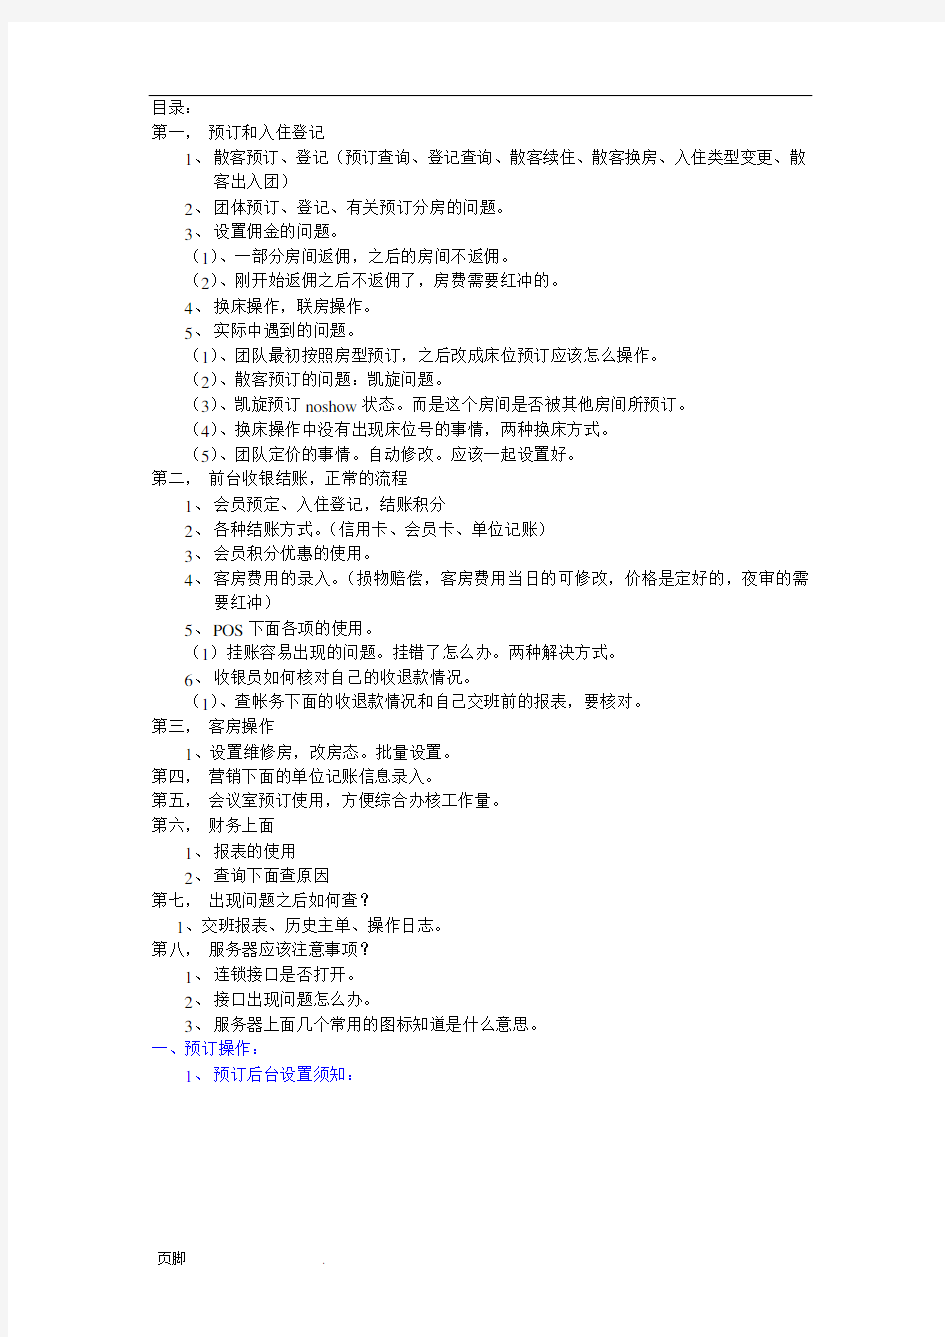 汇锦国际酒店管理系统操作流程图